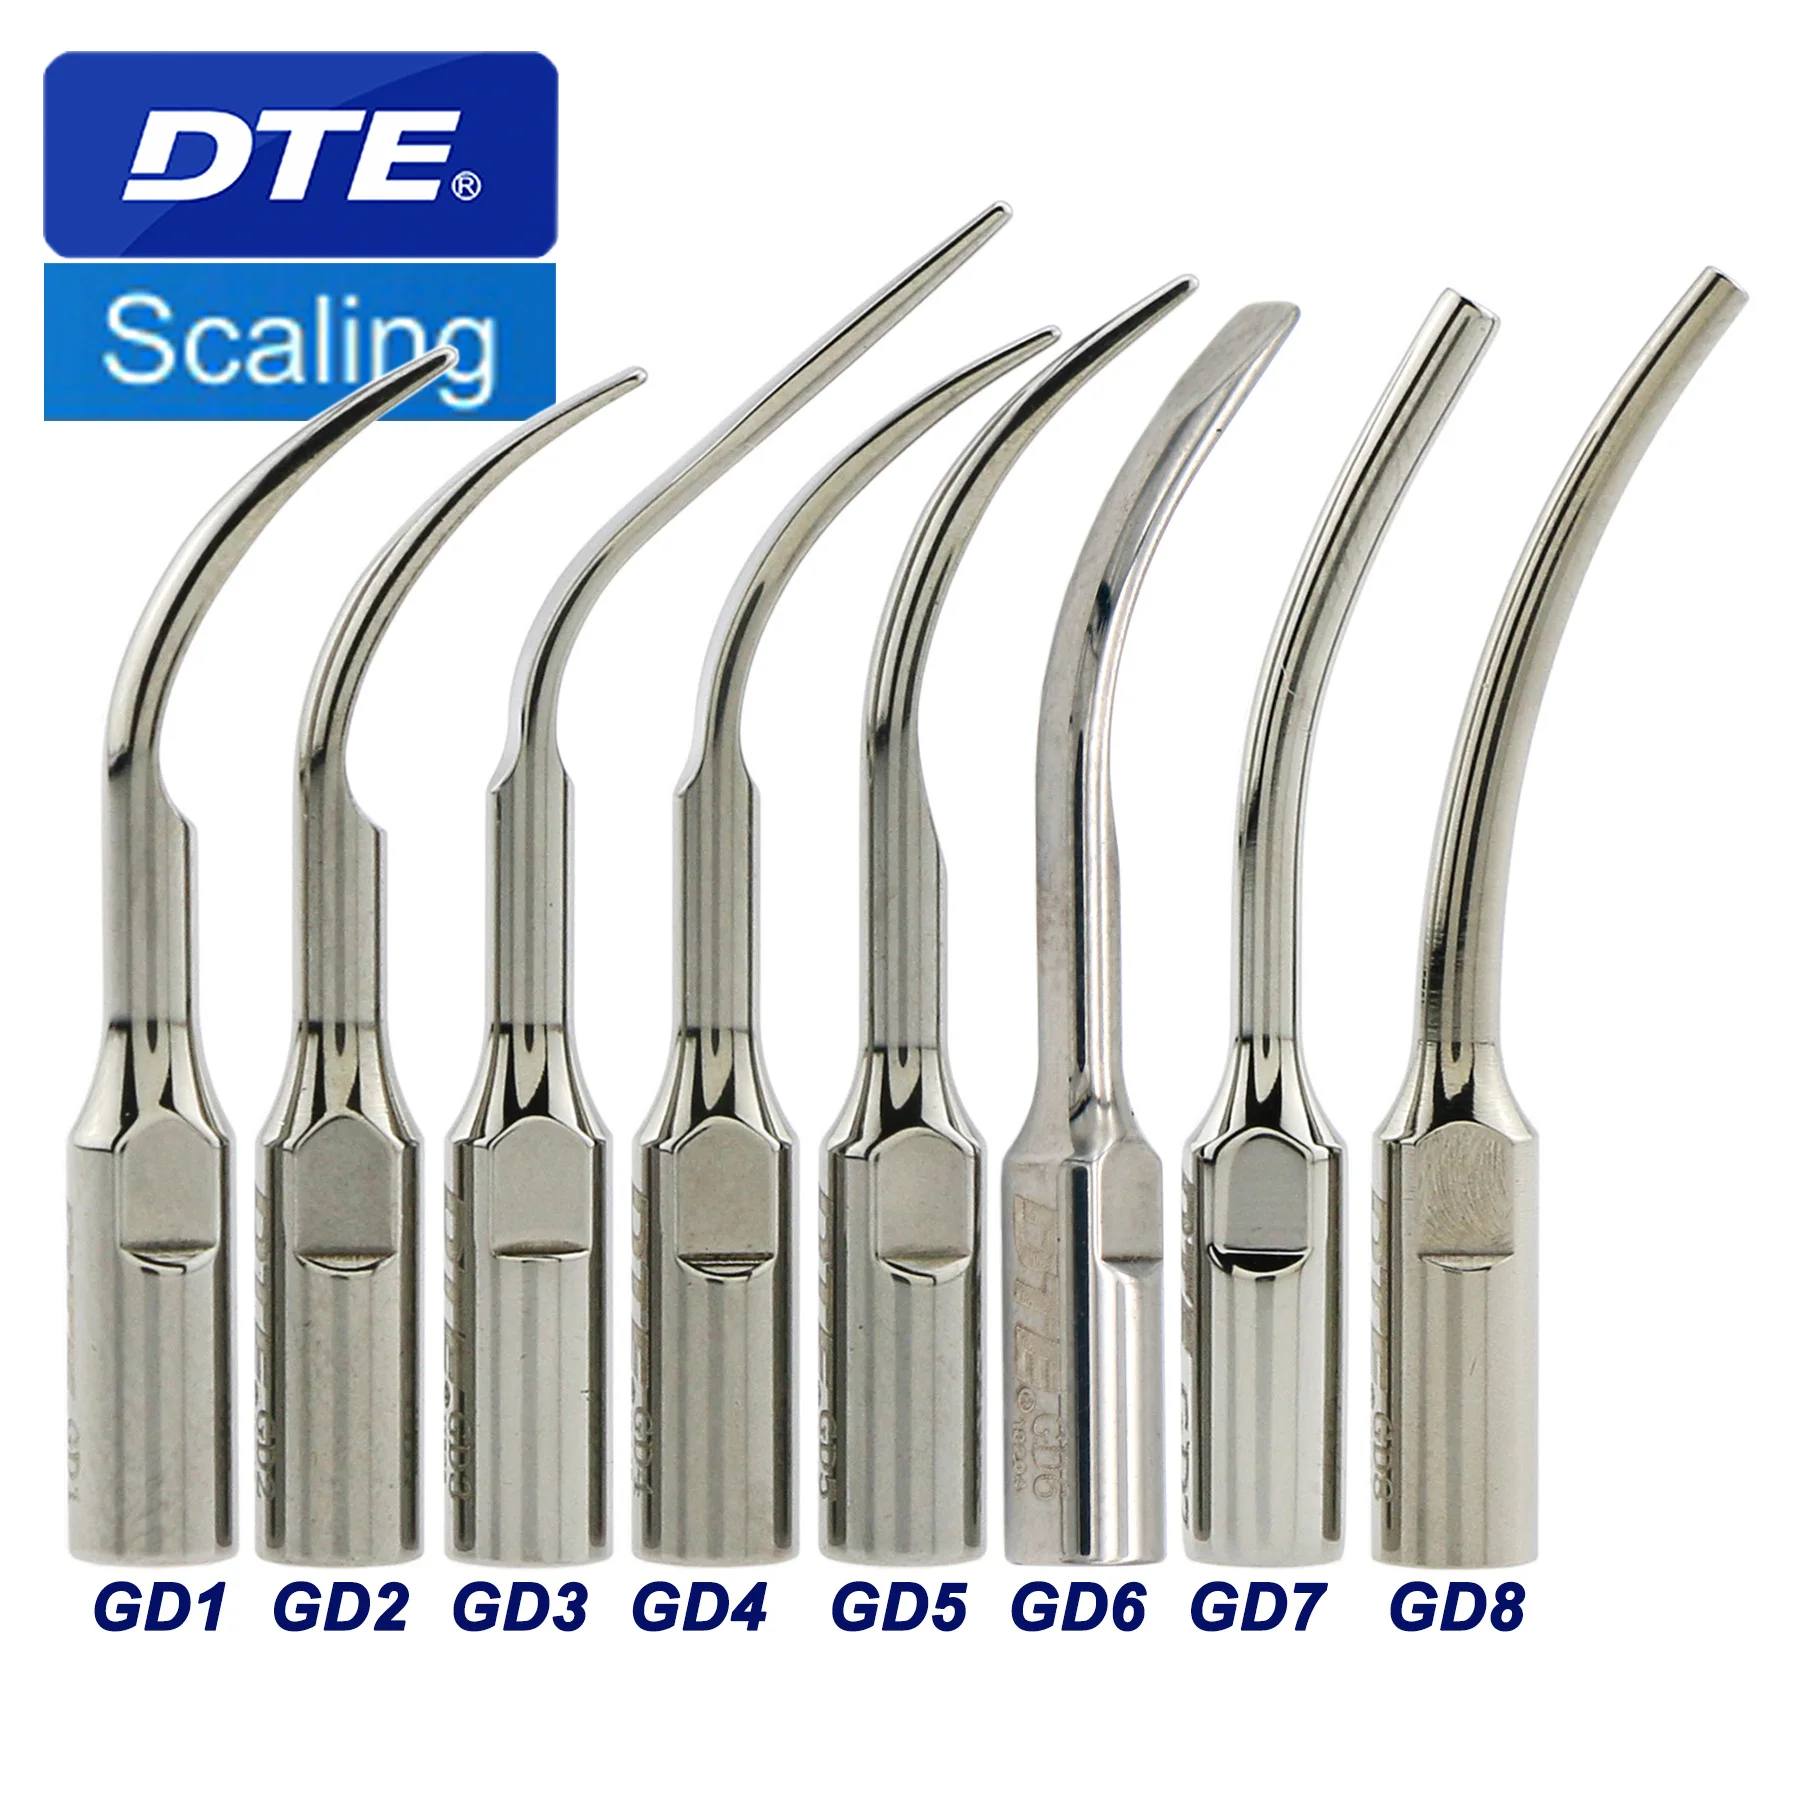 

Woodpecker DTE Series Dental Supragingival Scaling Tips Ultrasonic Scaler Tip GD1 GD2 GD3 GD4 GD5 GD6 GD7 GD8 Fit NSK Satelec